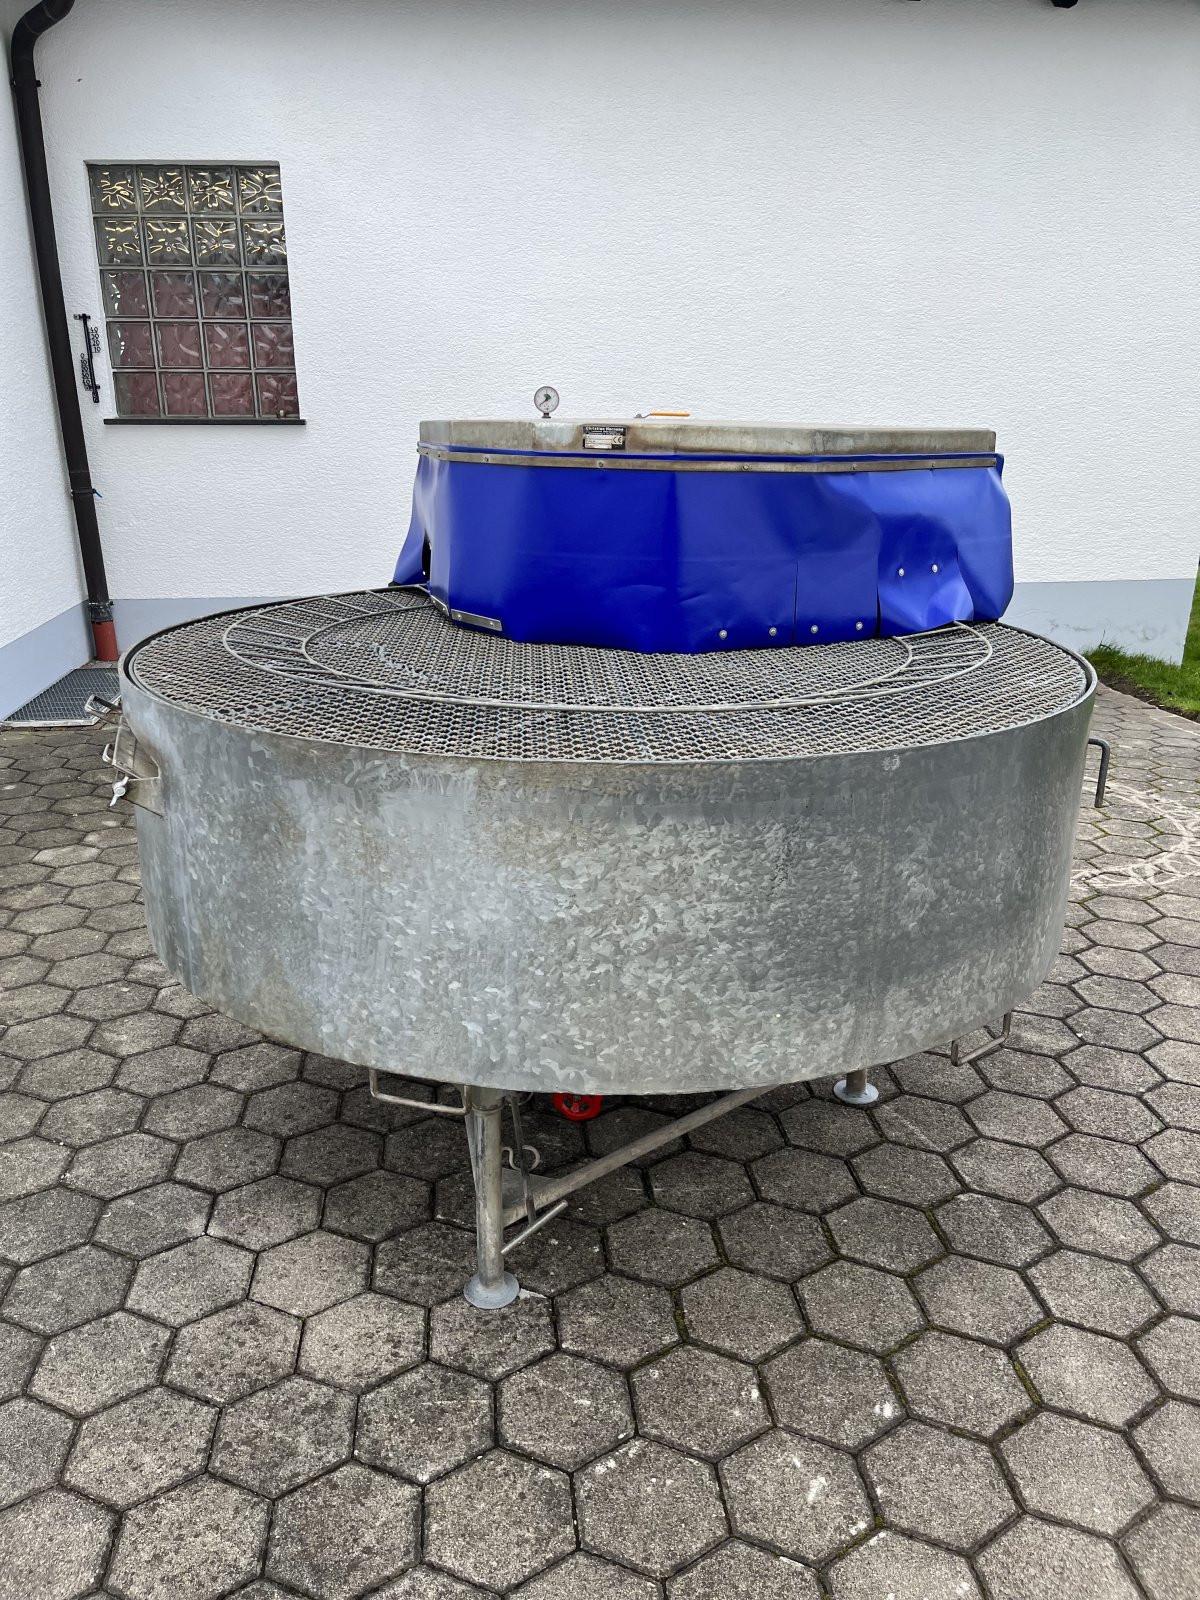 Waschmaschine des Typs Hornung Gemüsewascher, Gebrauchtmaschine in Friedberg (Bild 1)